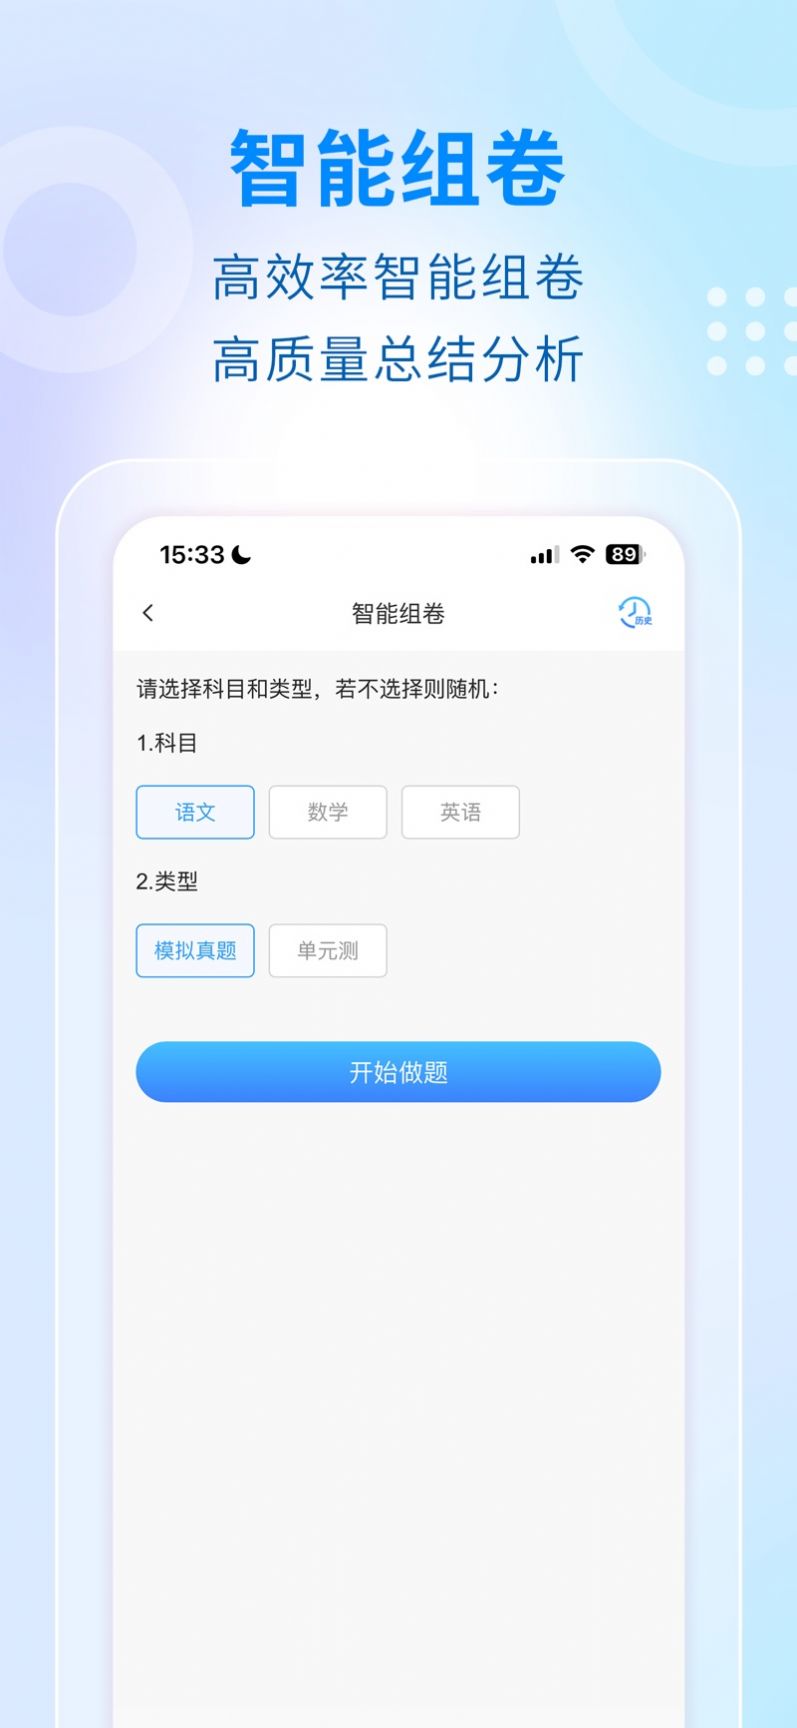 学考云课堂下载app官方最新版安装图片6